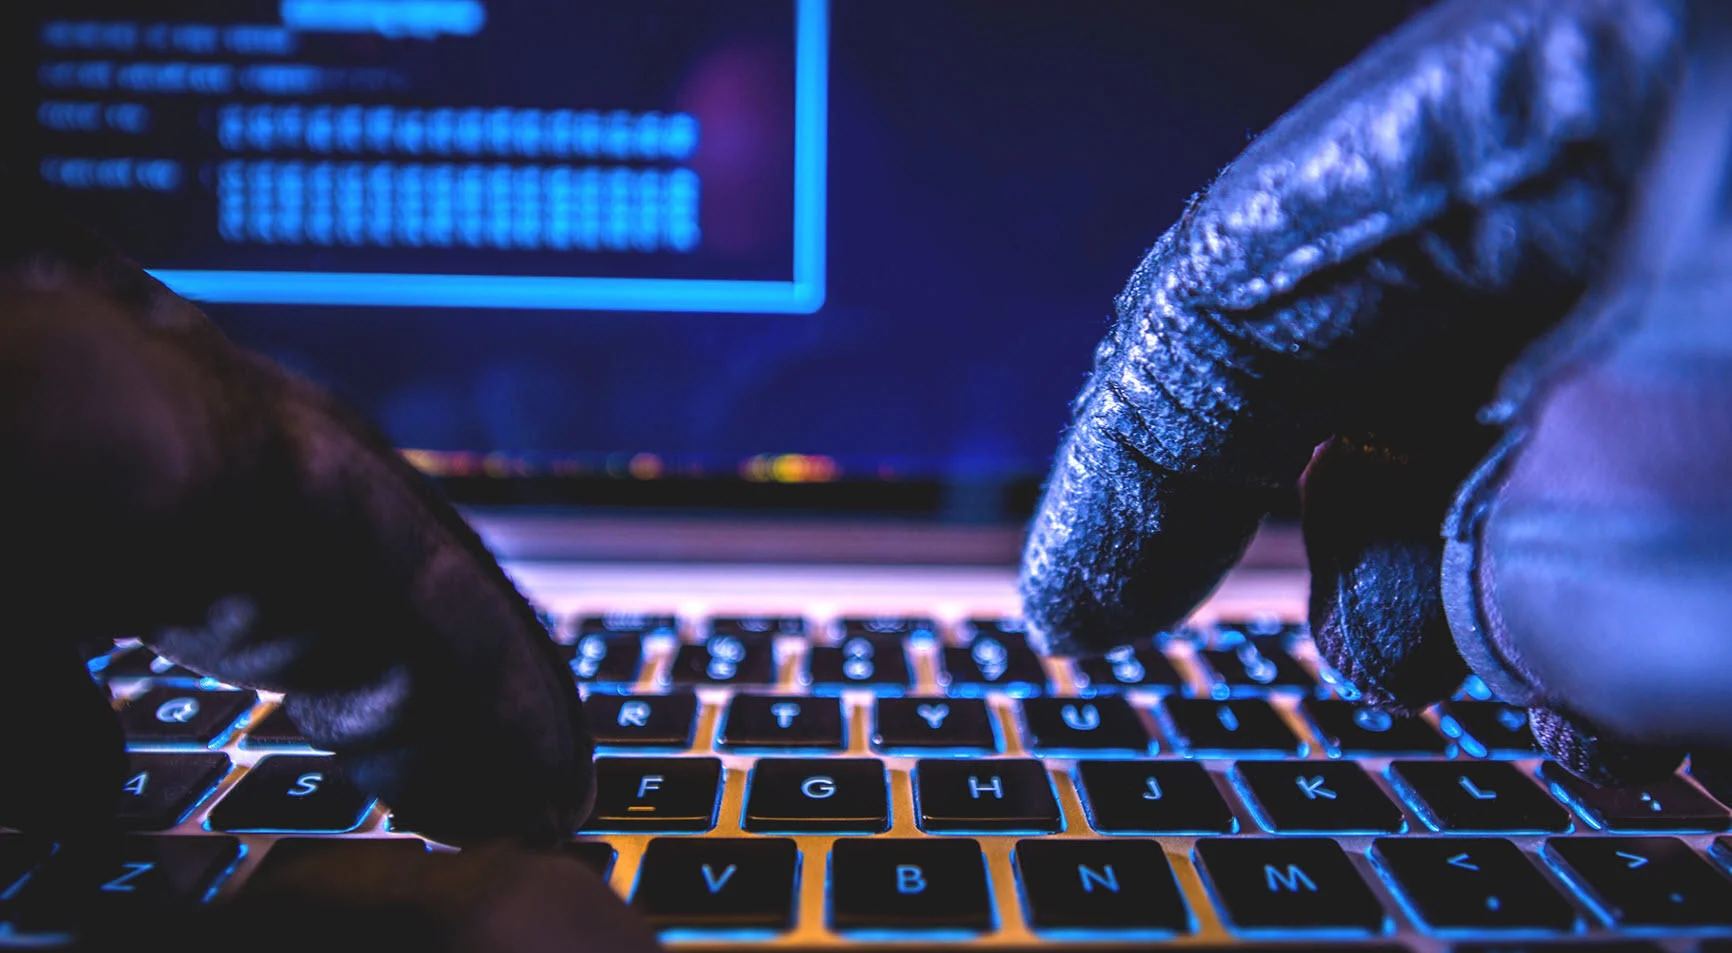 Проверьте свою почту на взлом: хакеры выложили в Сеть 773 млн электронных адресов с паролями - фото 1